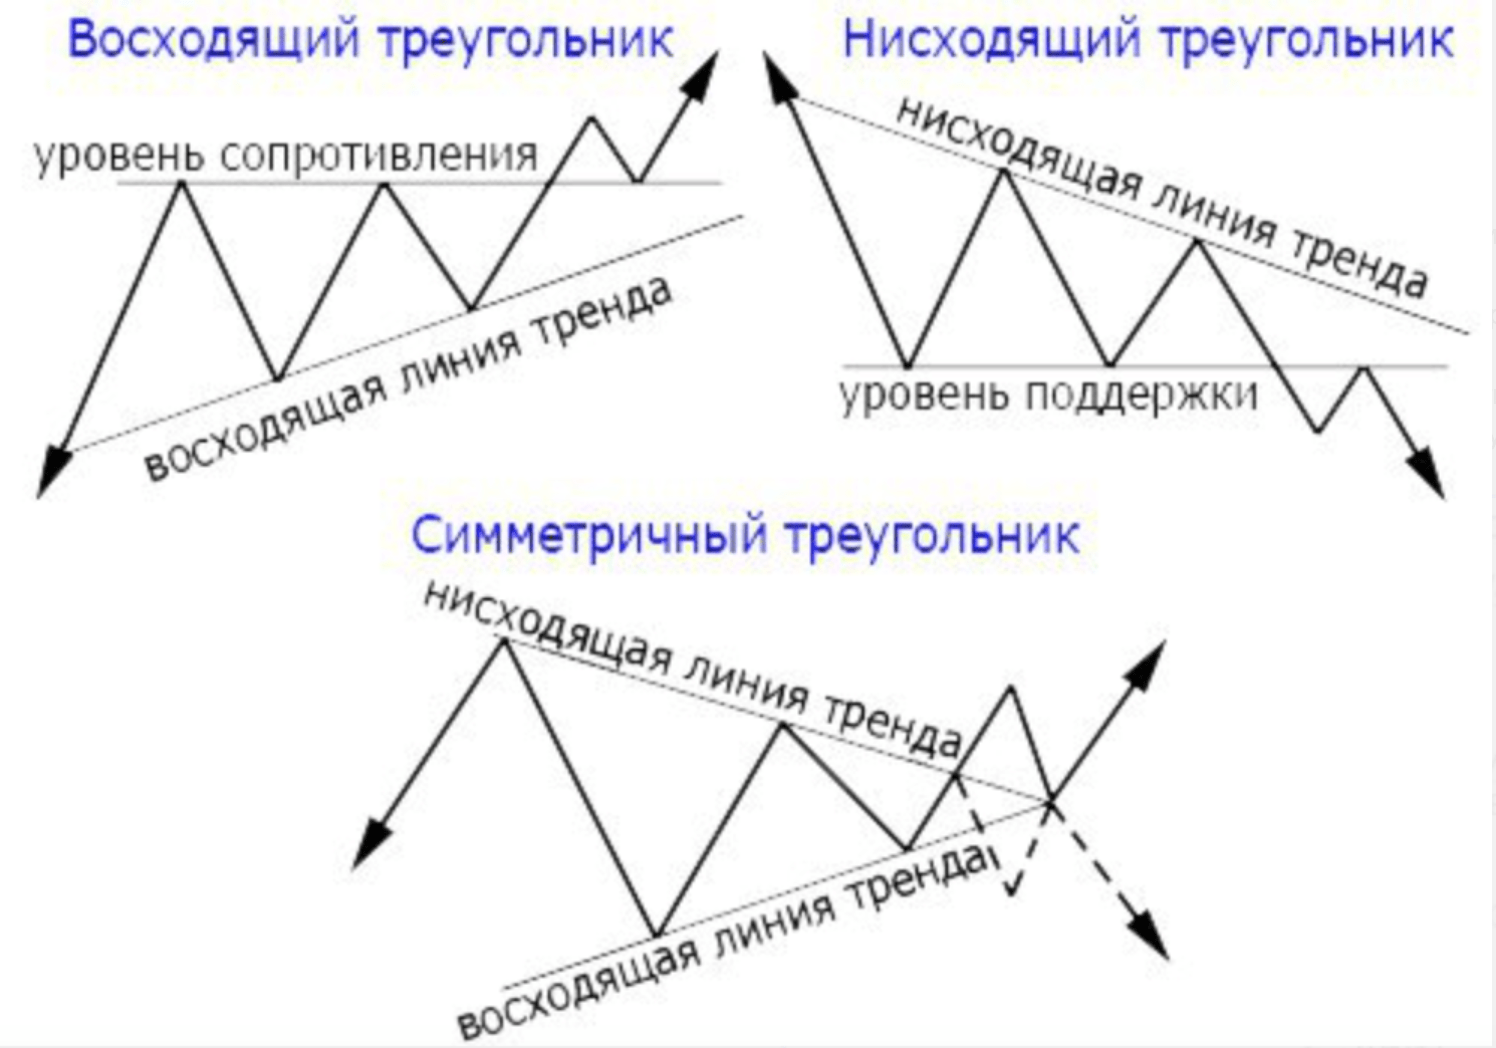 Прямая нисходящая линия. Треугольник с плоским верхом в трейдинге. Фигура восходящий треугольник в трейдинге. Фигуры технического анализа в трейдинге. Восходящий нисходящий треугольник фигуры технического анализа.